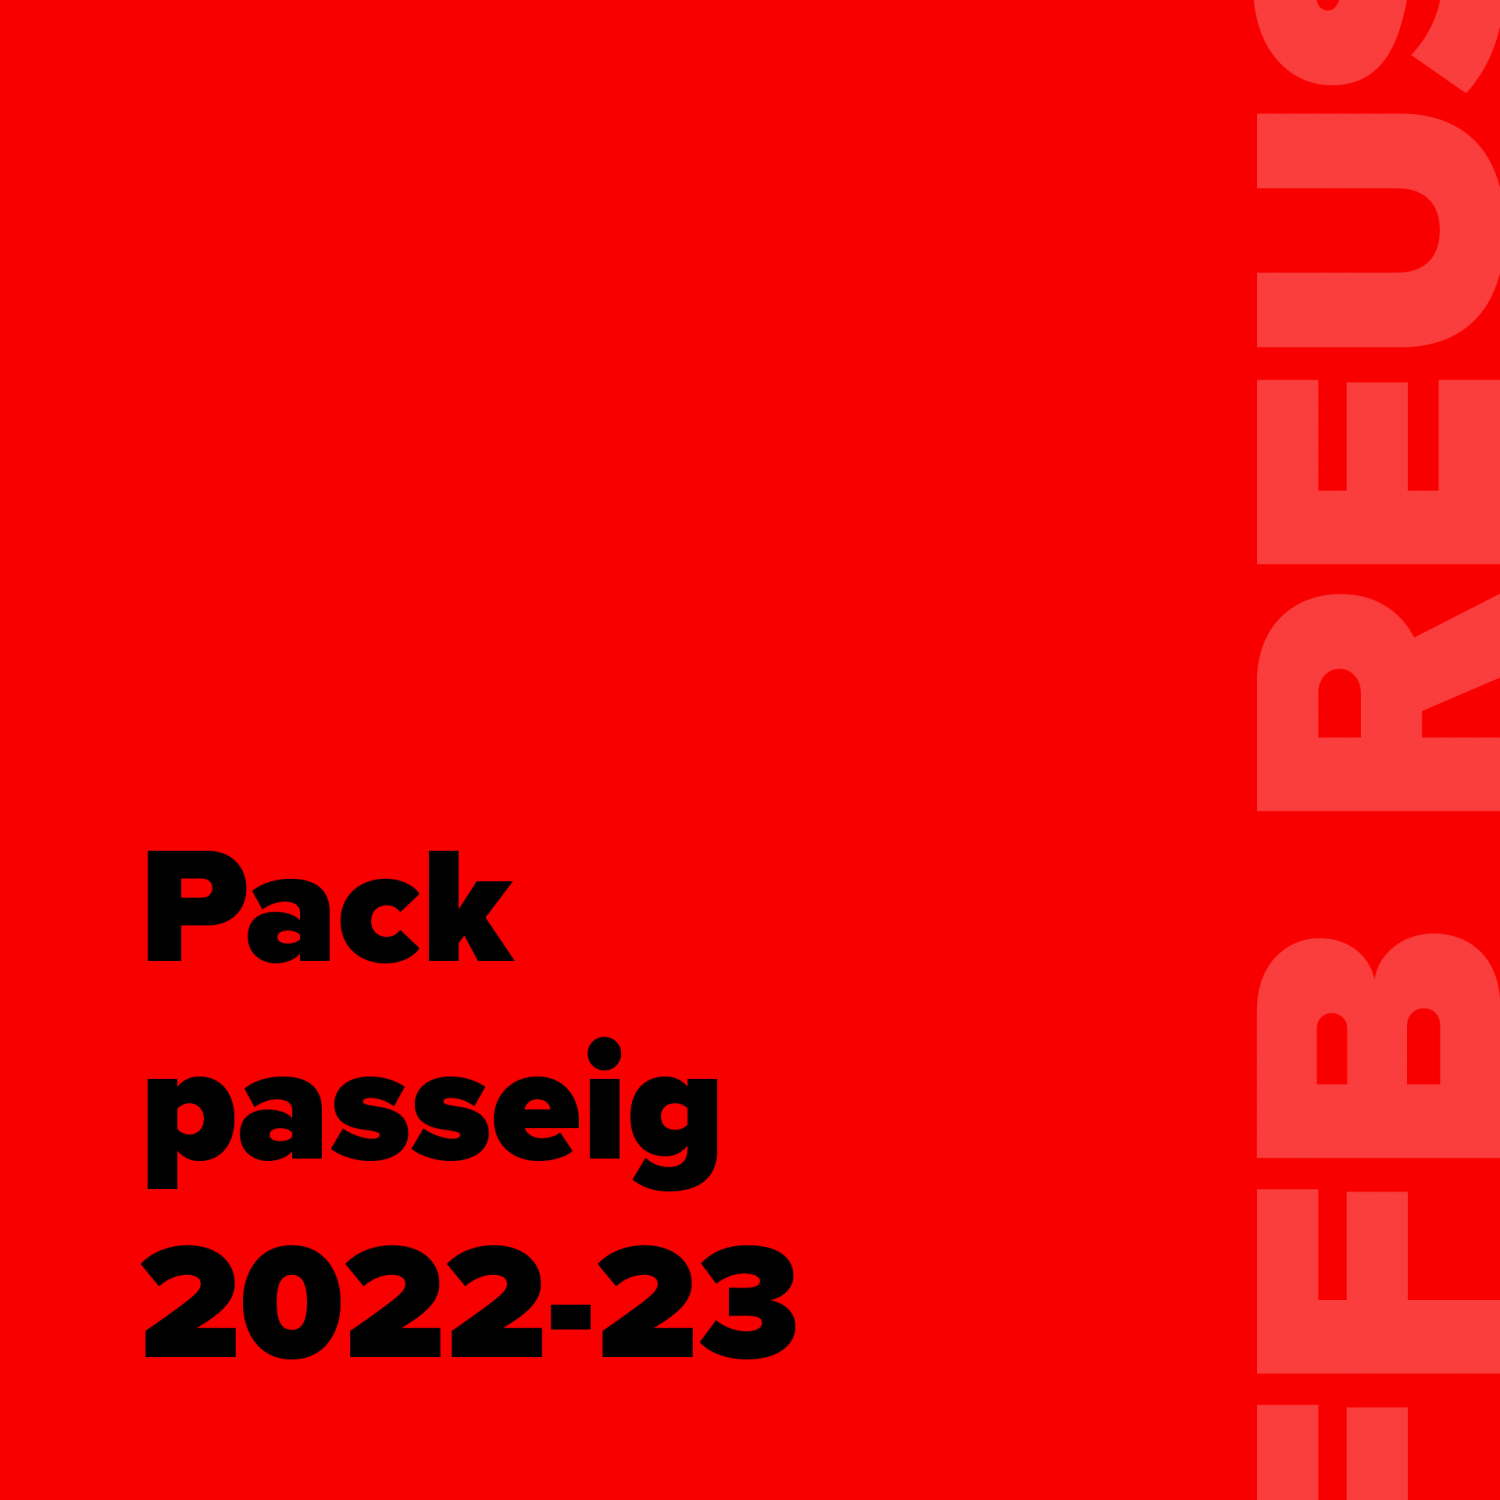 Pack passeig 22-23 FFB Reus